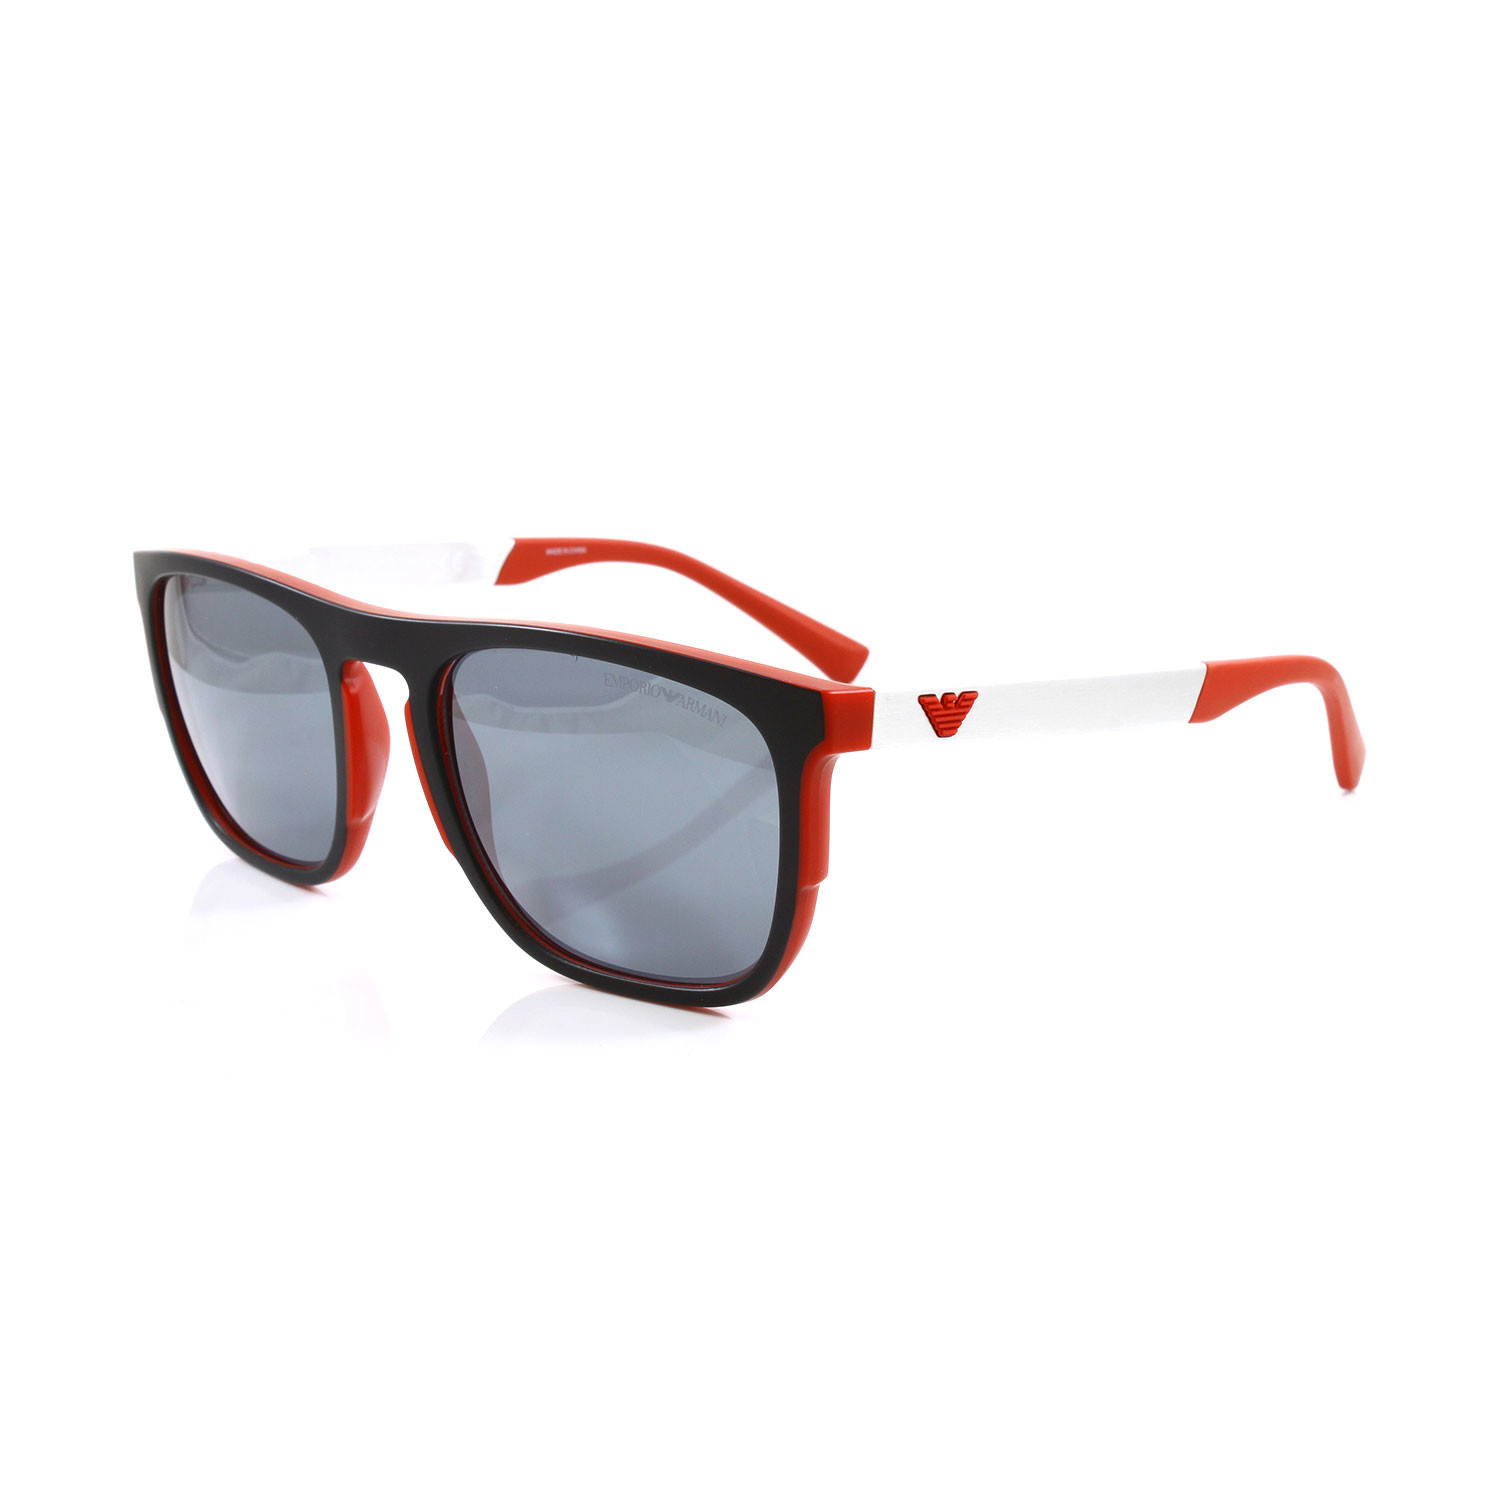 Emporio Armani // Men's EA4114 Sunglasses // Matte Black + Matte Red ...